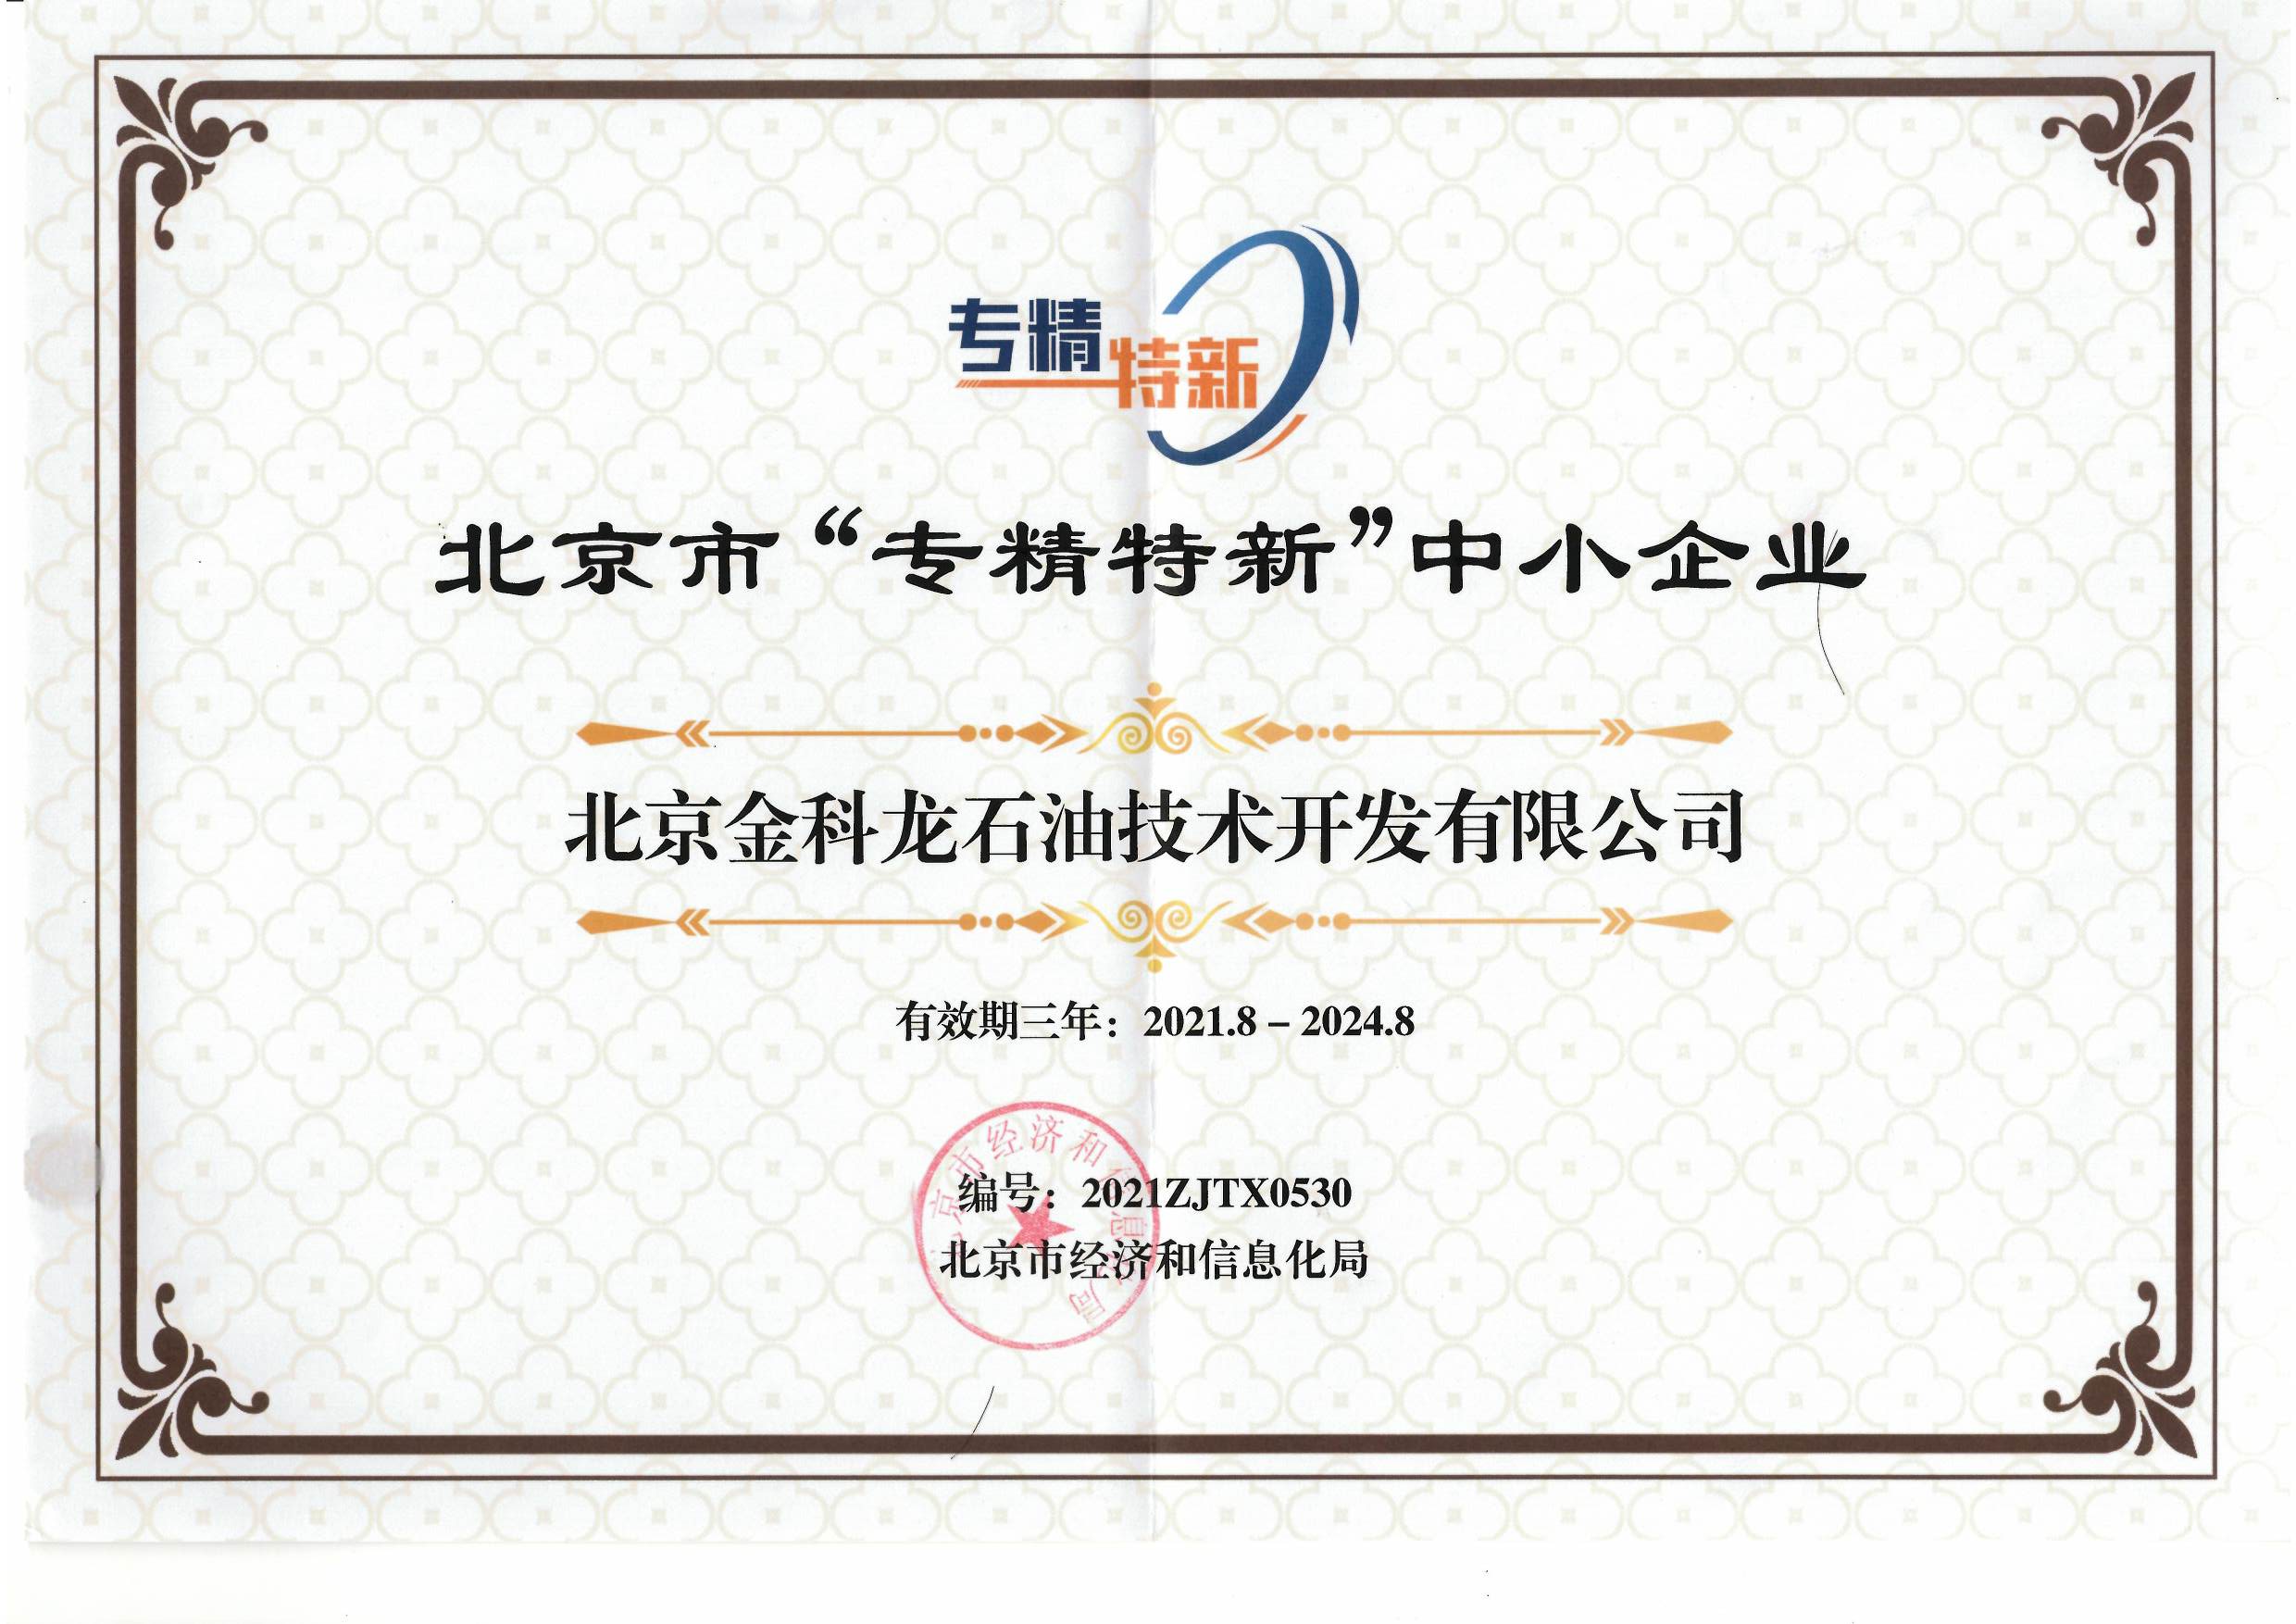  恭喜我公司被北京市认定为2021年第三批：《专精特新企业》